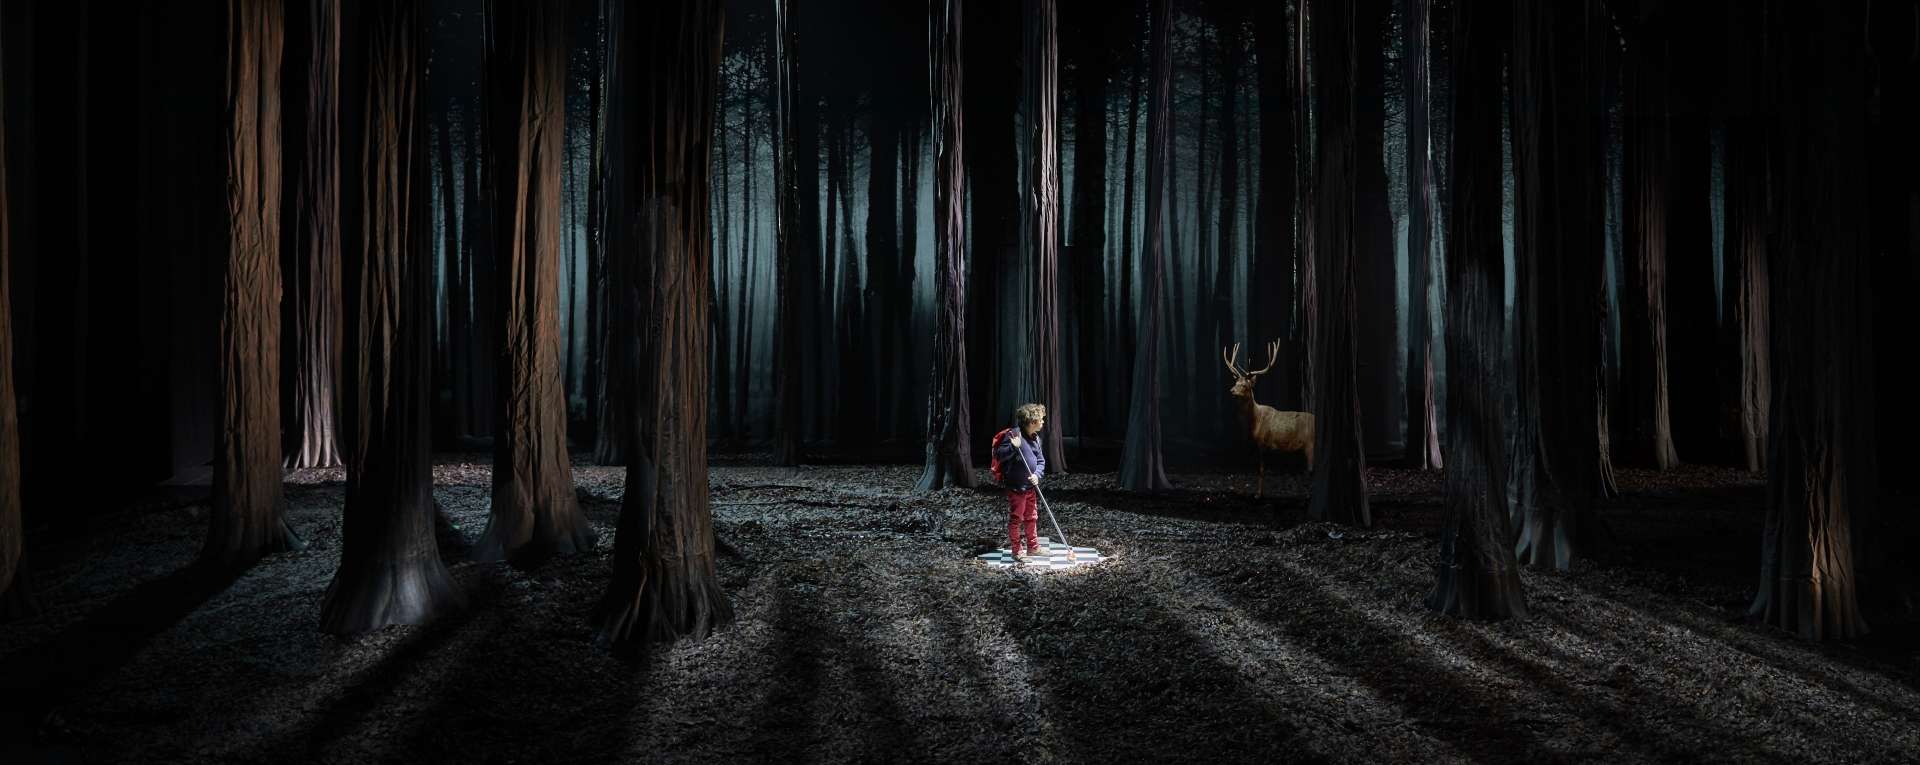 Un petit personnage et un cerf sont au cœur d'une forêt. Ambiance sombre. 